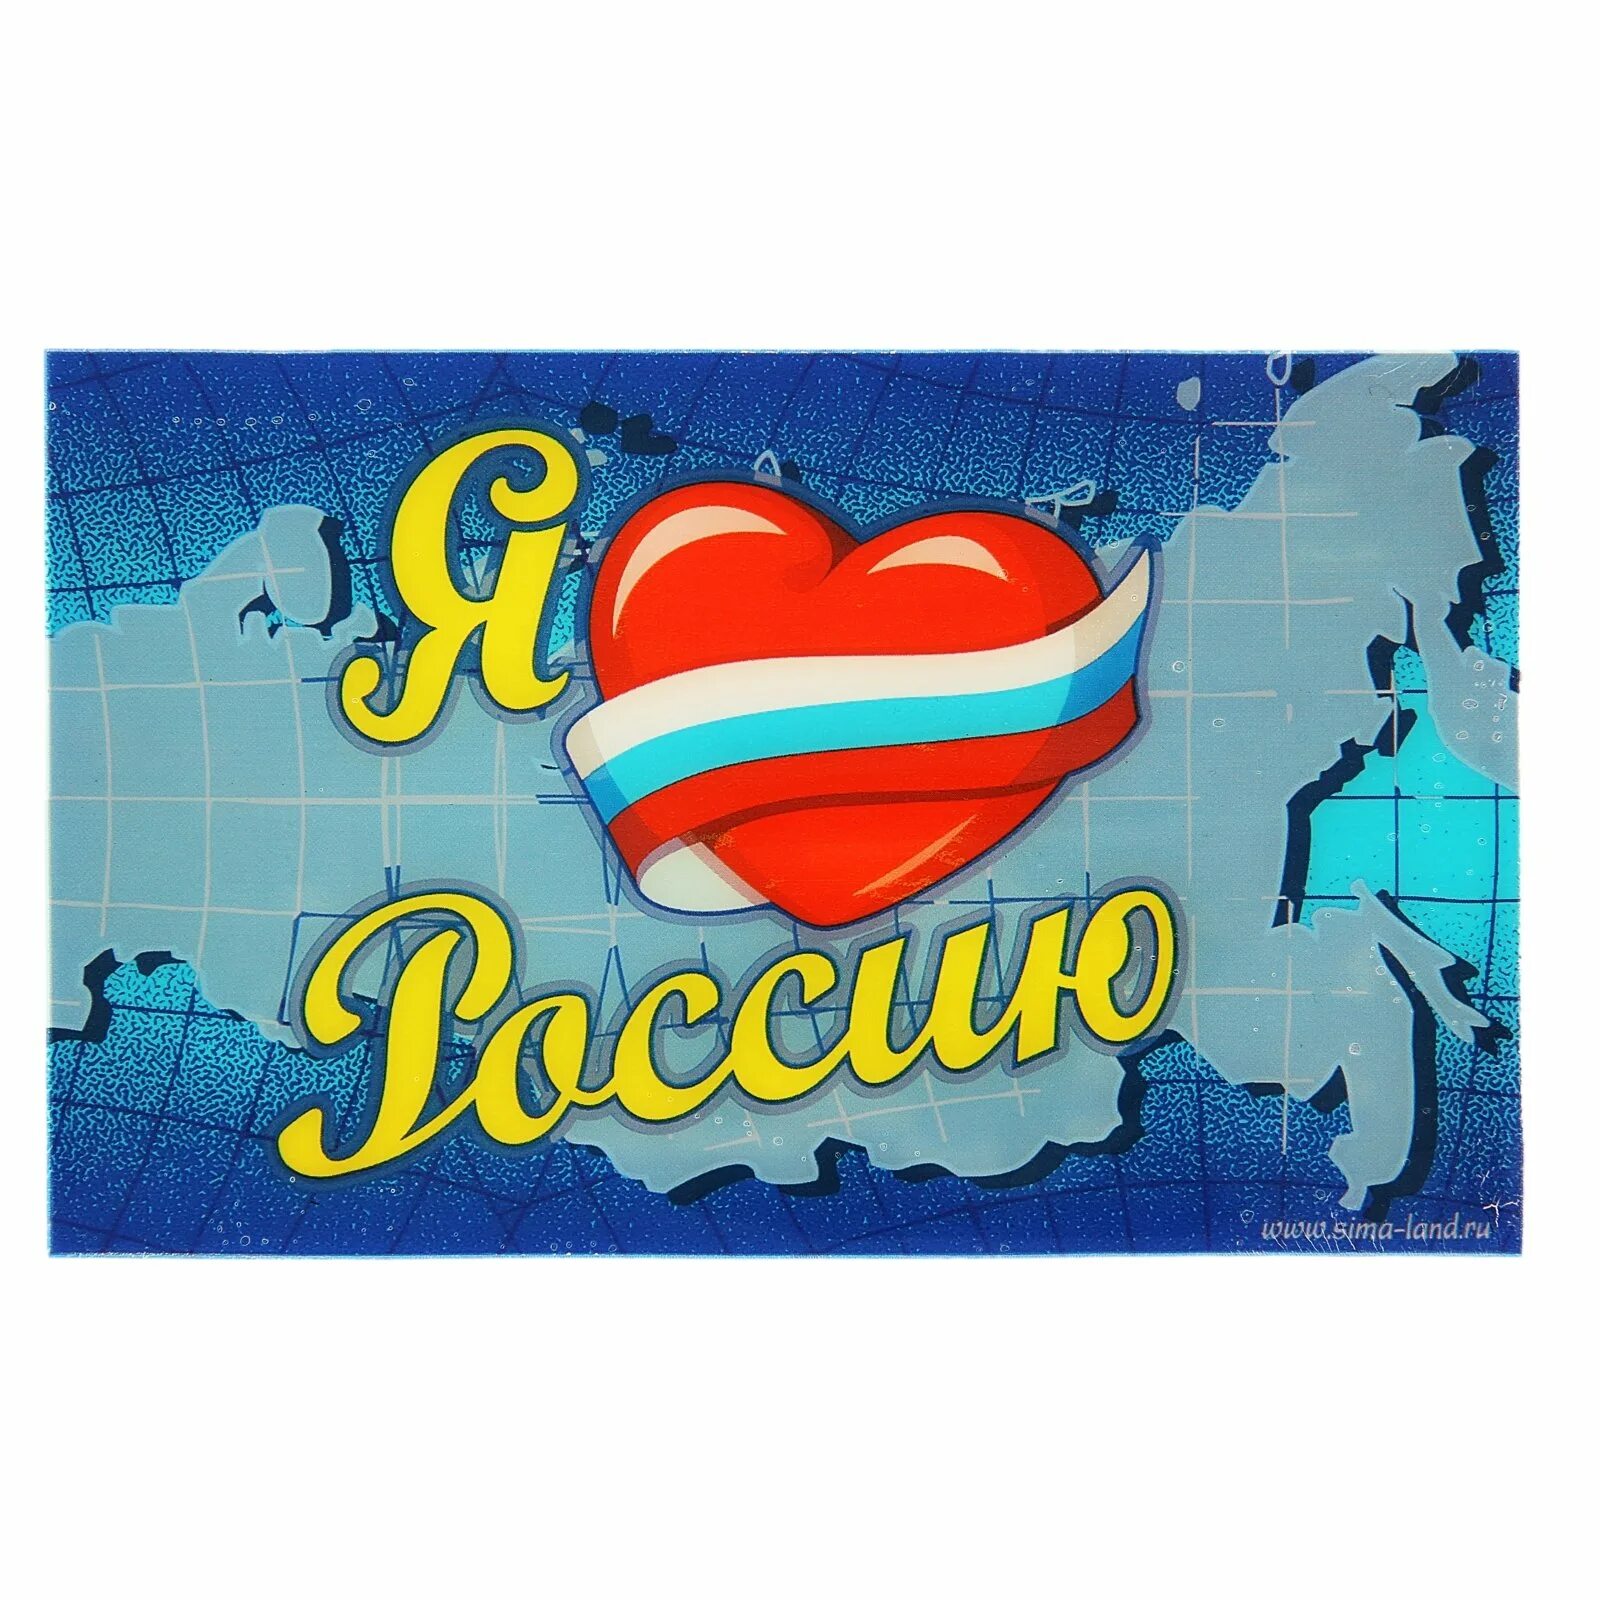 Я люблю Россию. Надпись я люблю Россию. Я люблю тебя Россия надпись. Открытка я люблю Россию. Я люблю все страны